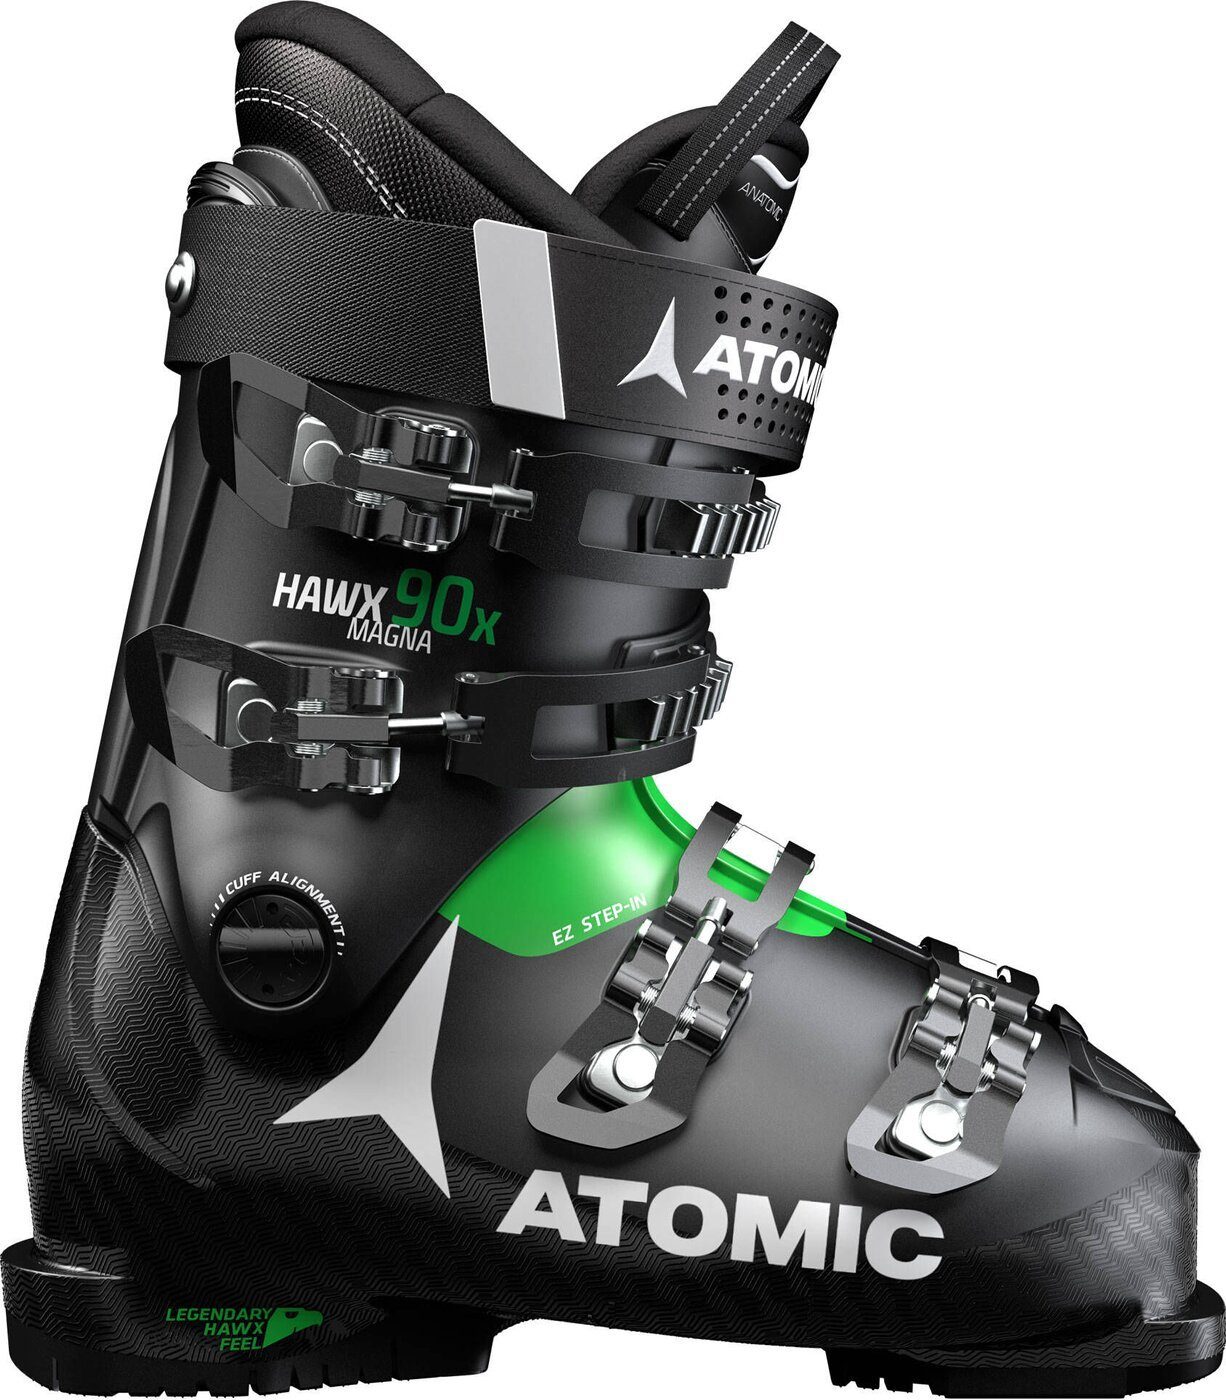 Atomic 90X MAGNA Skischuh Black/Green HAWX